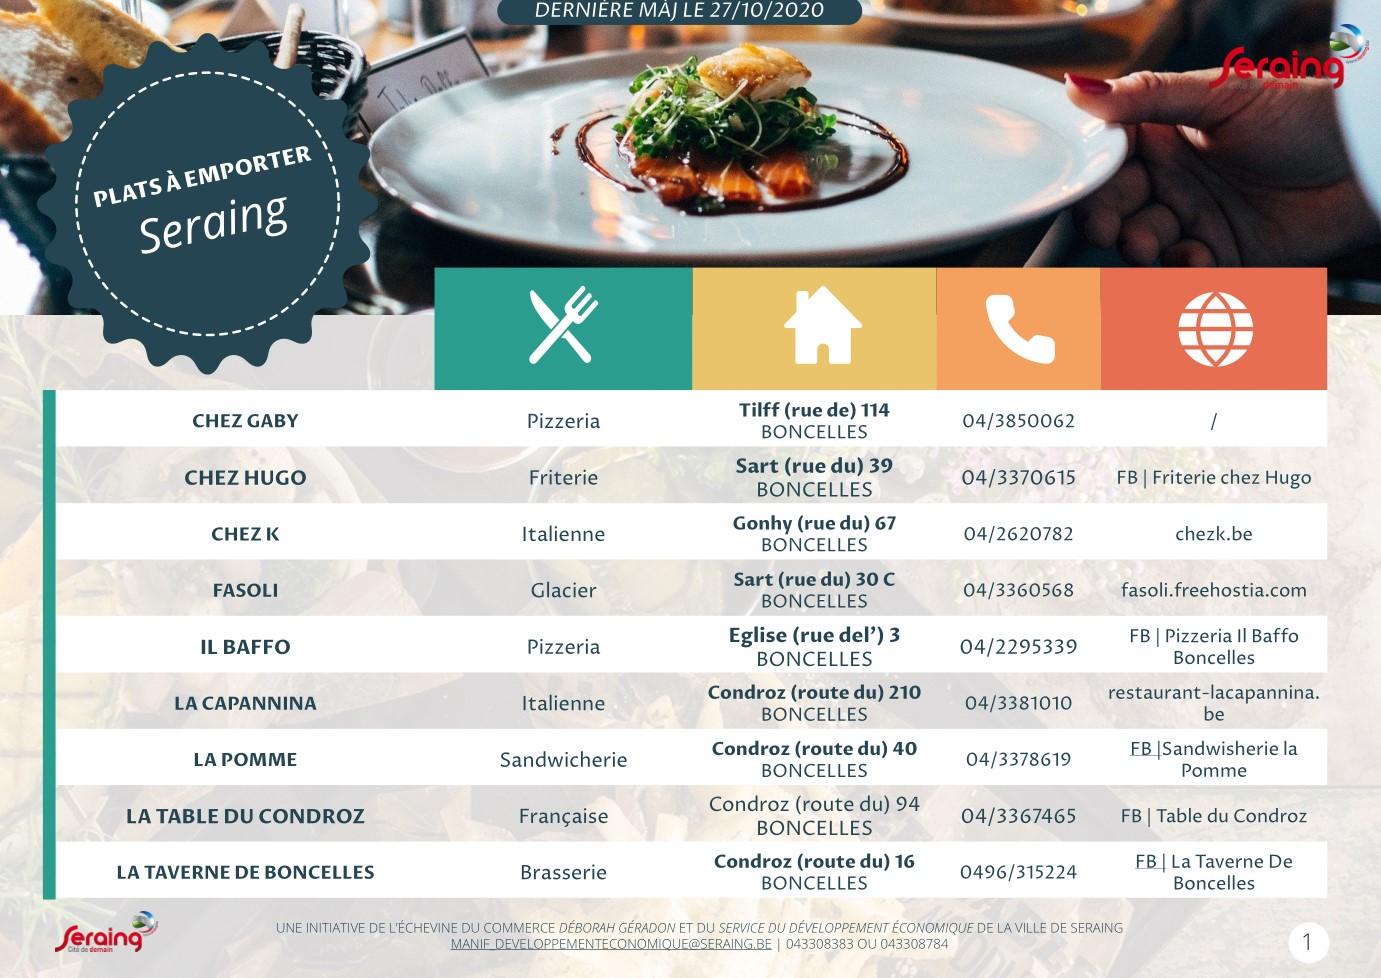 Soutien aux restaurateurs : Seraing développe un listing avec leurs coordonnées